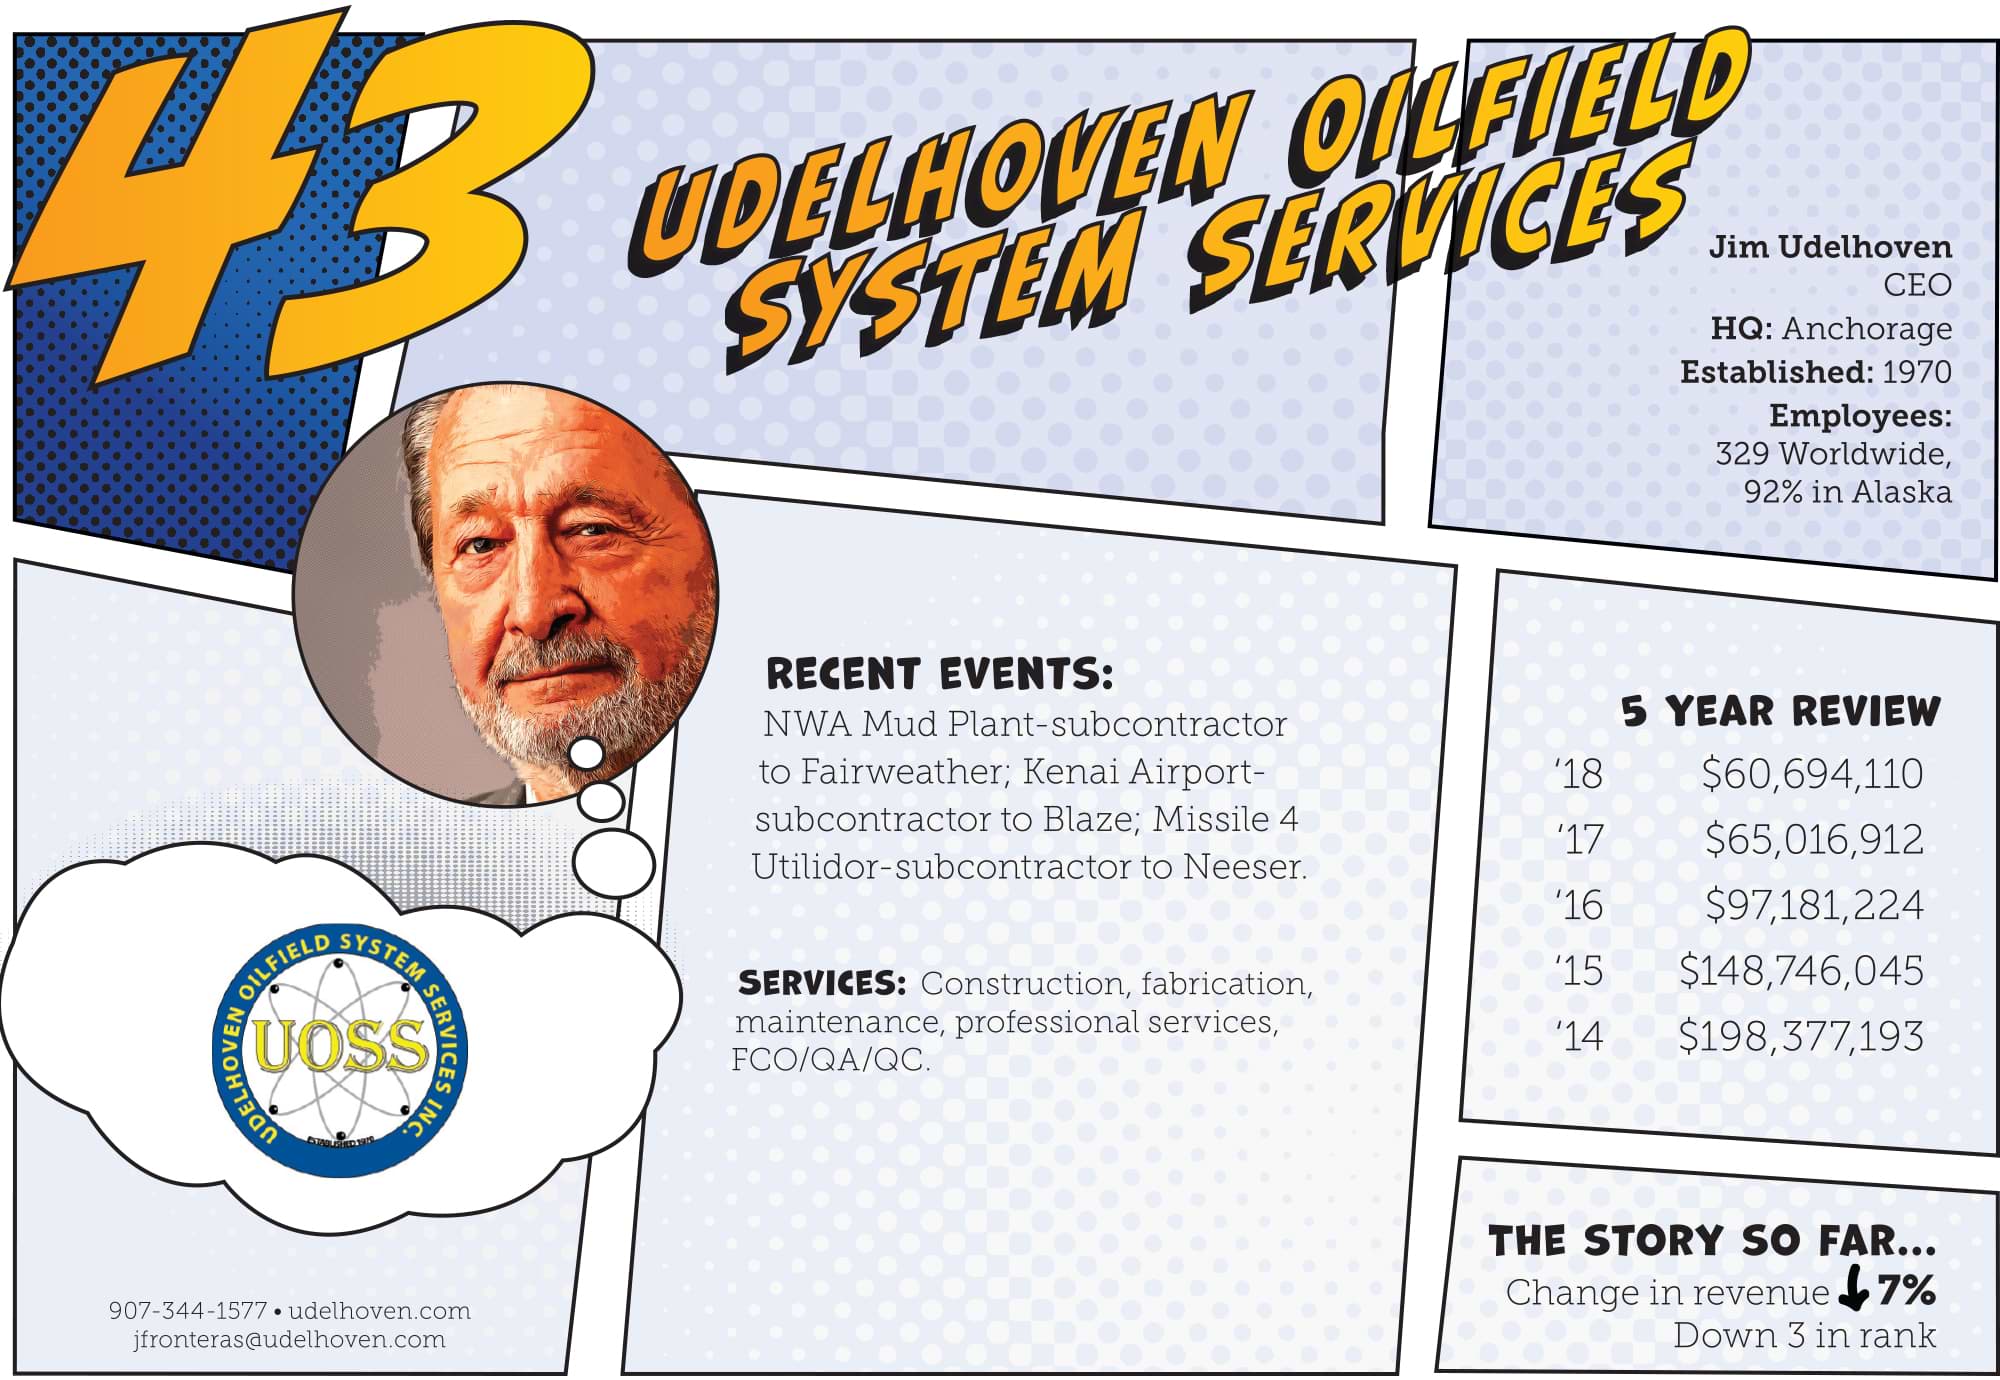 Udelhoven Oilfield System Services